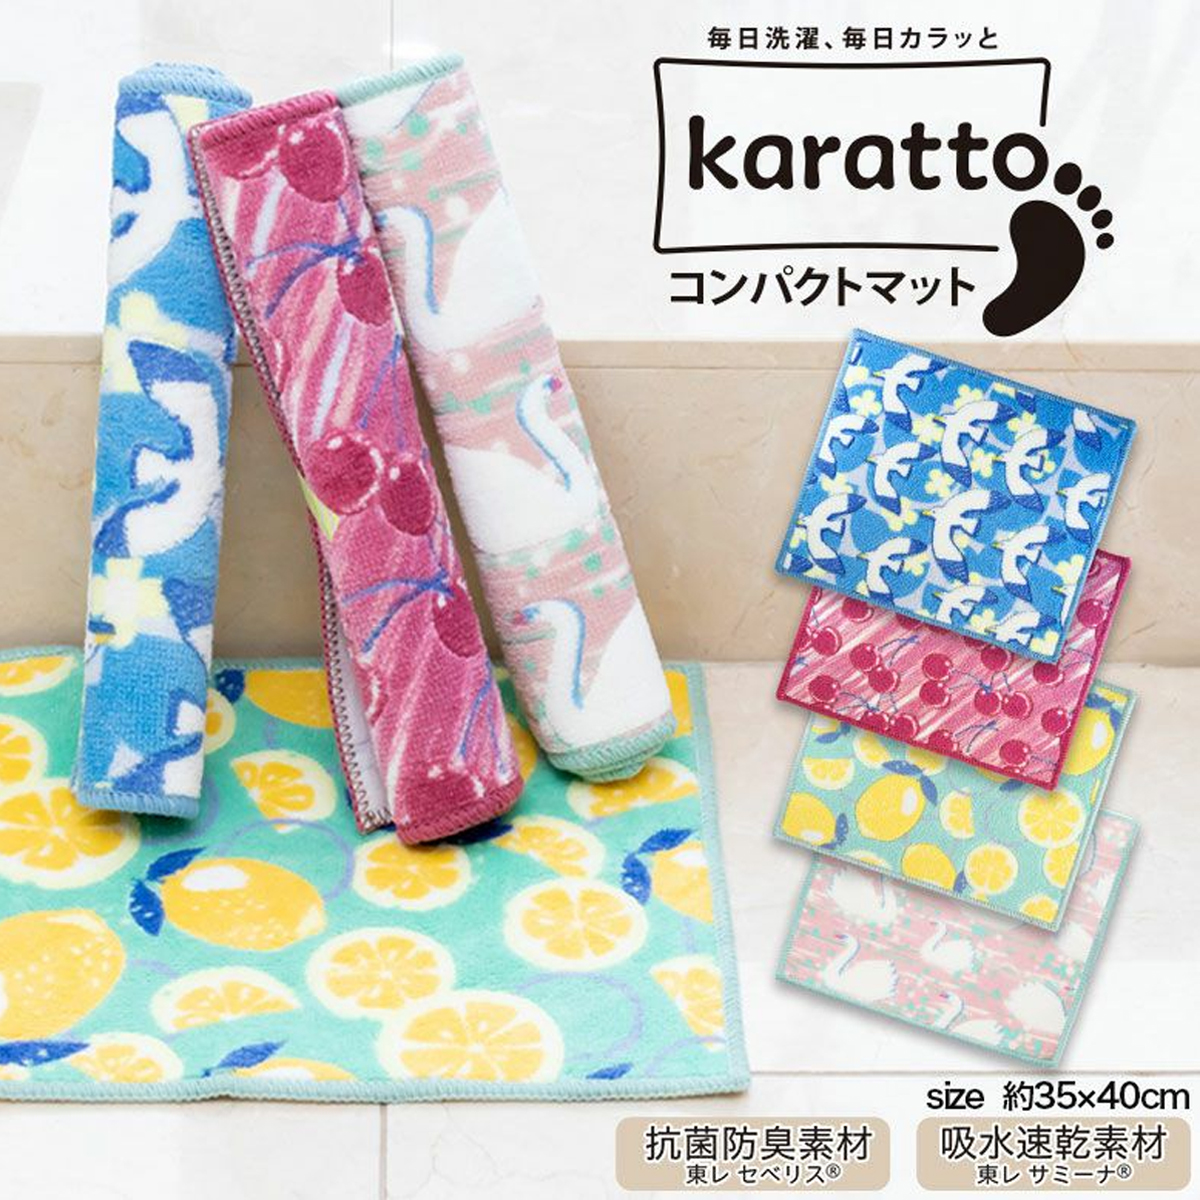 【日本製】karatto コンパクトマット